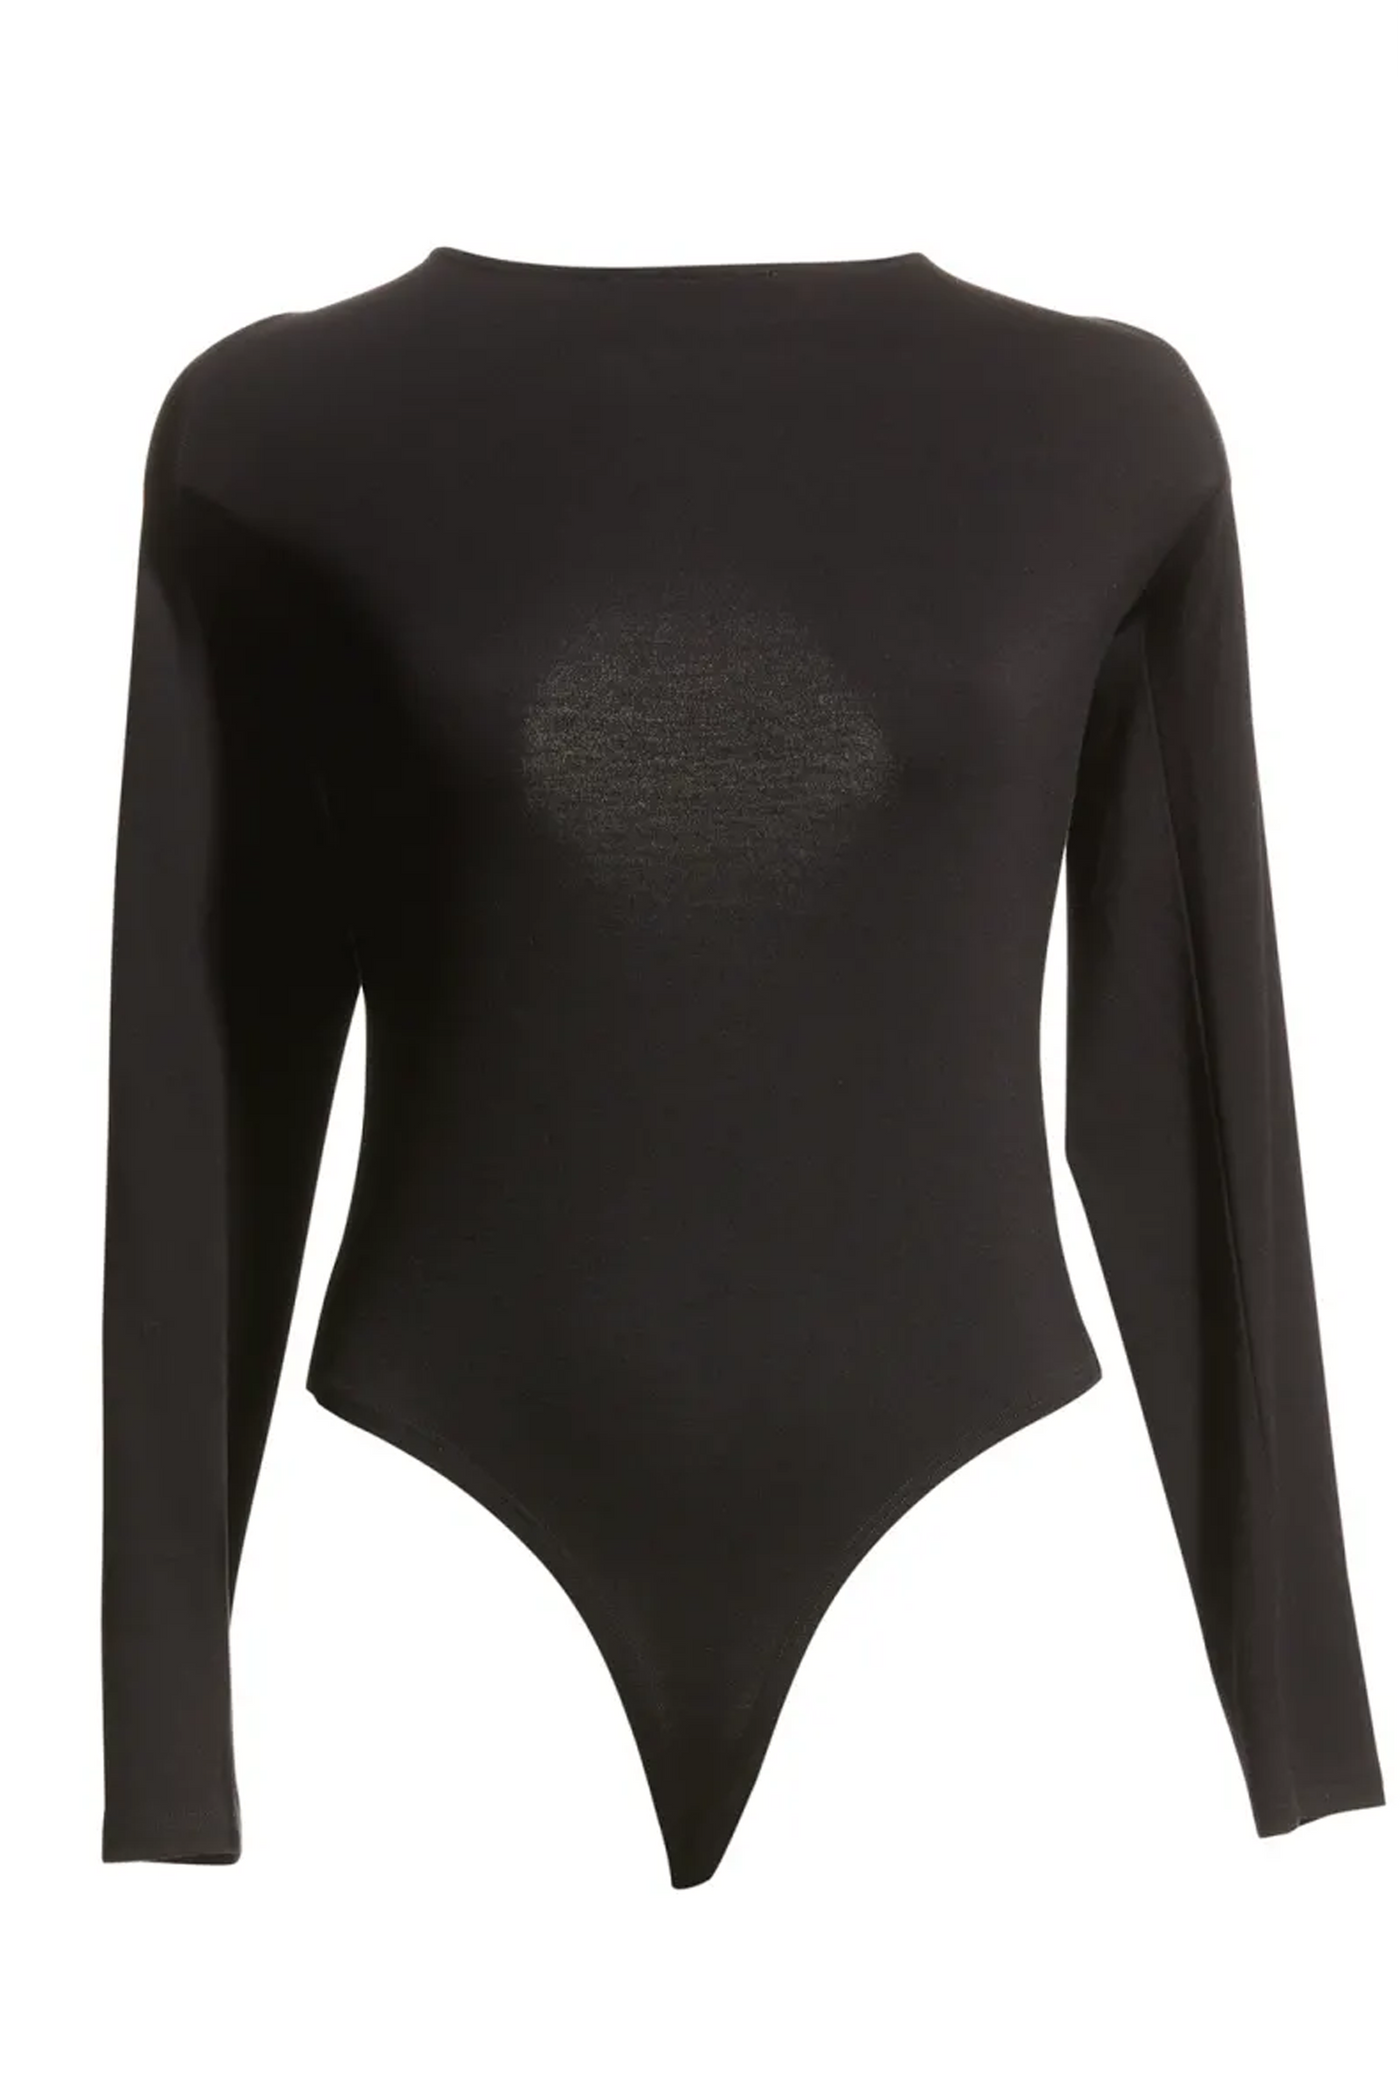 lblc the label: monica bodysuit